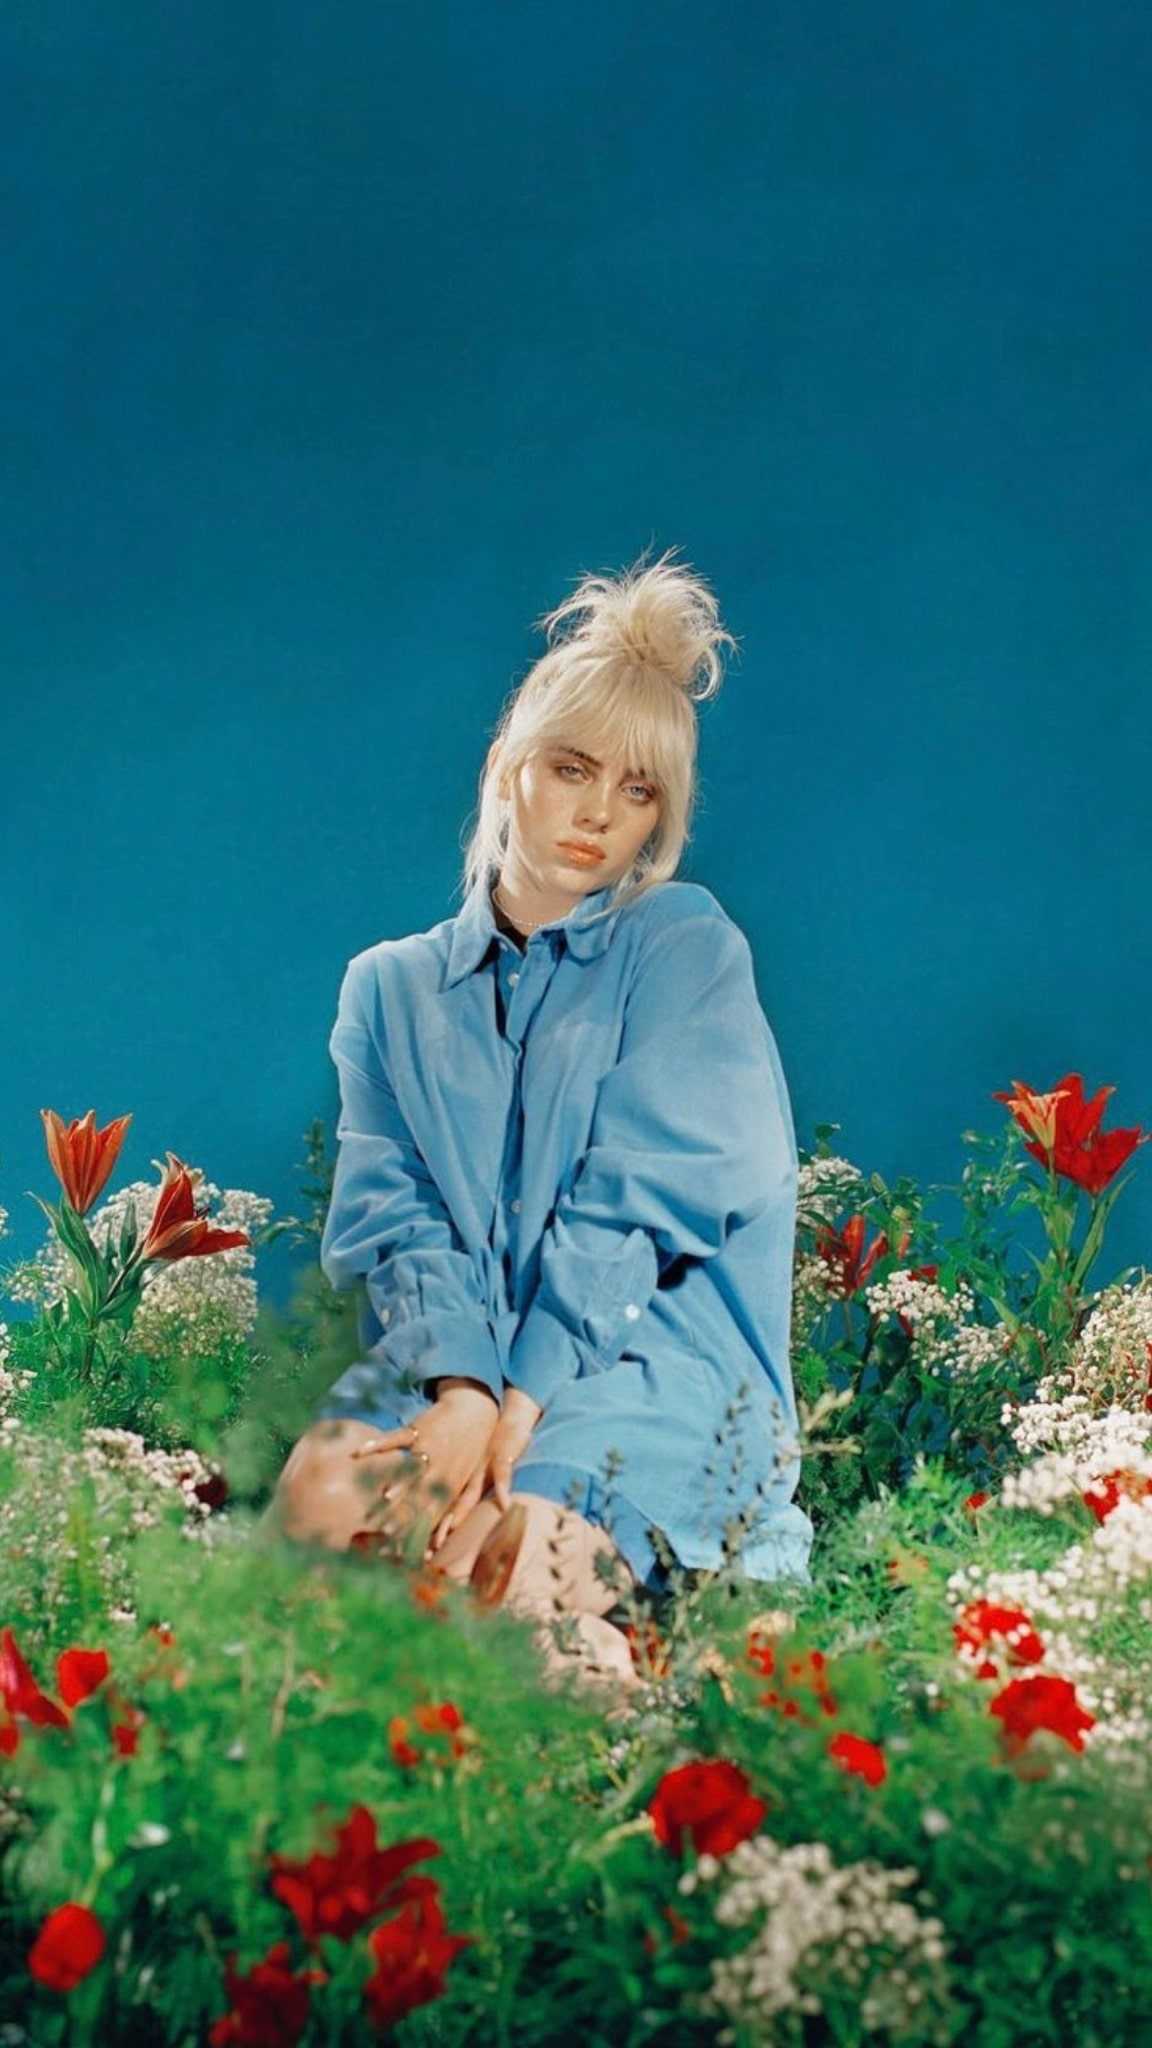 Billie Eilish in a blue shirt sitting in a field of flowers - Billie Eilish